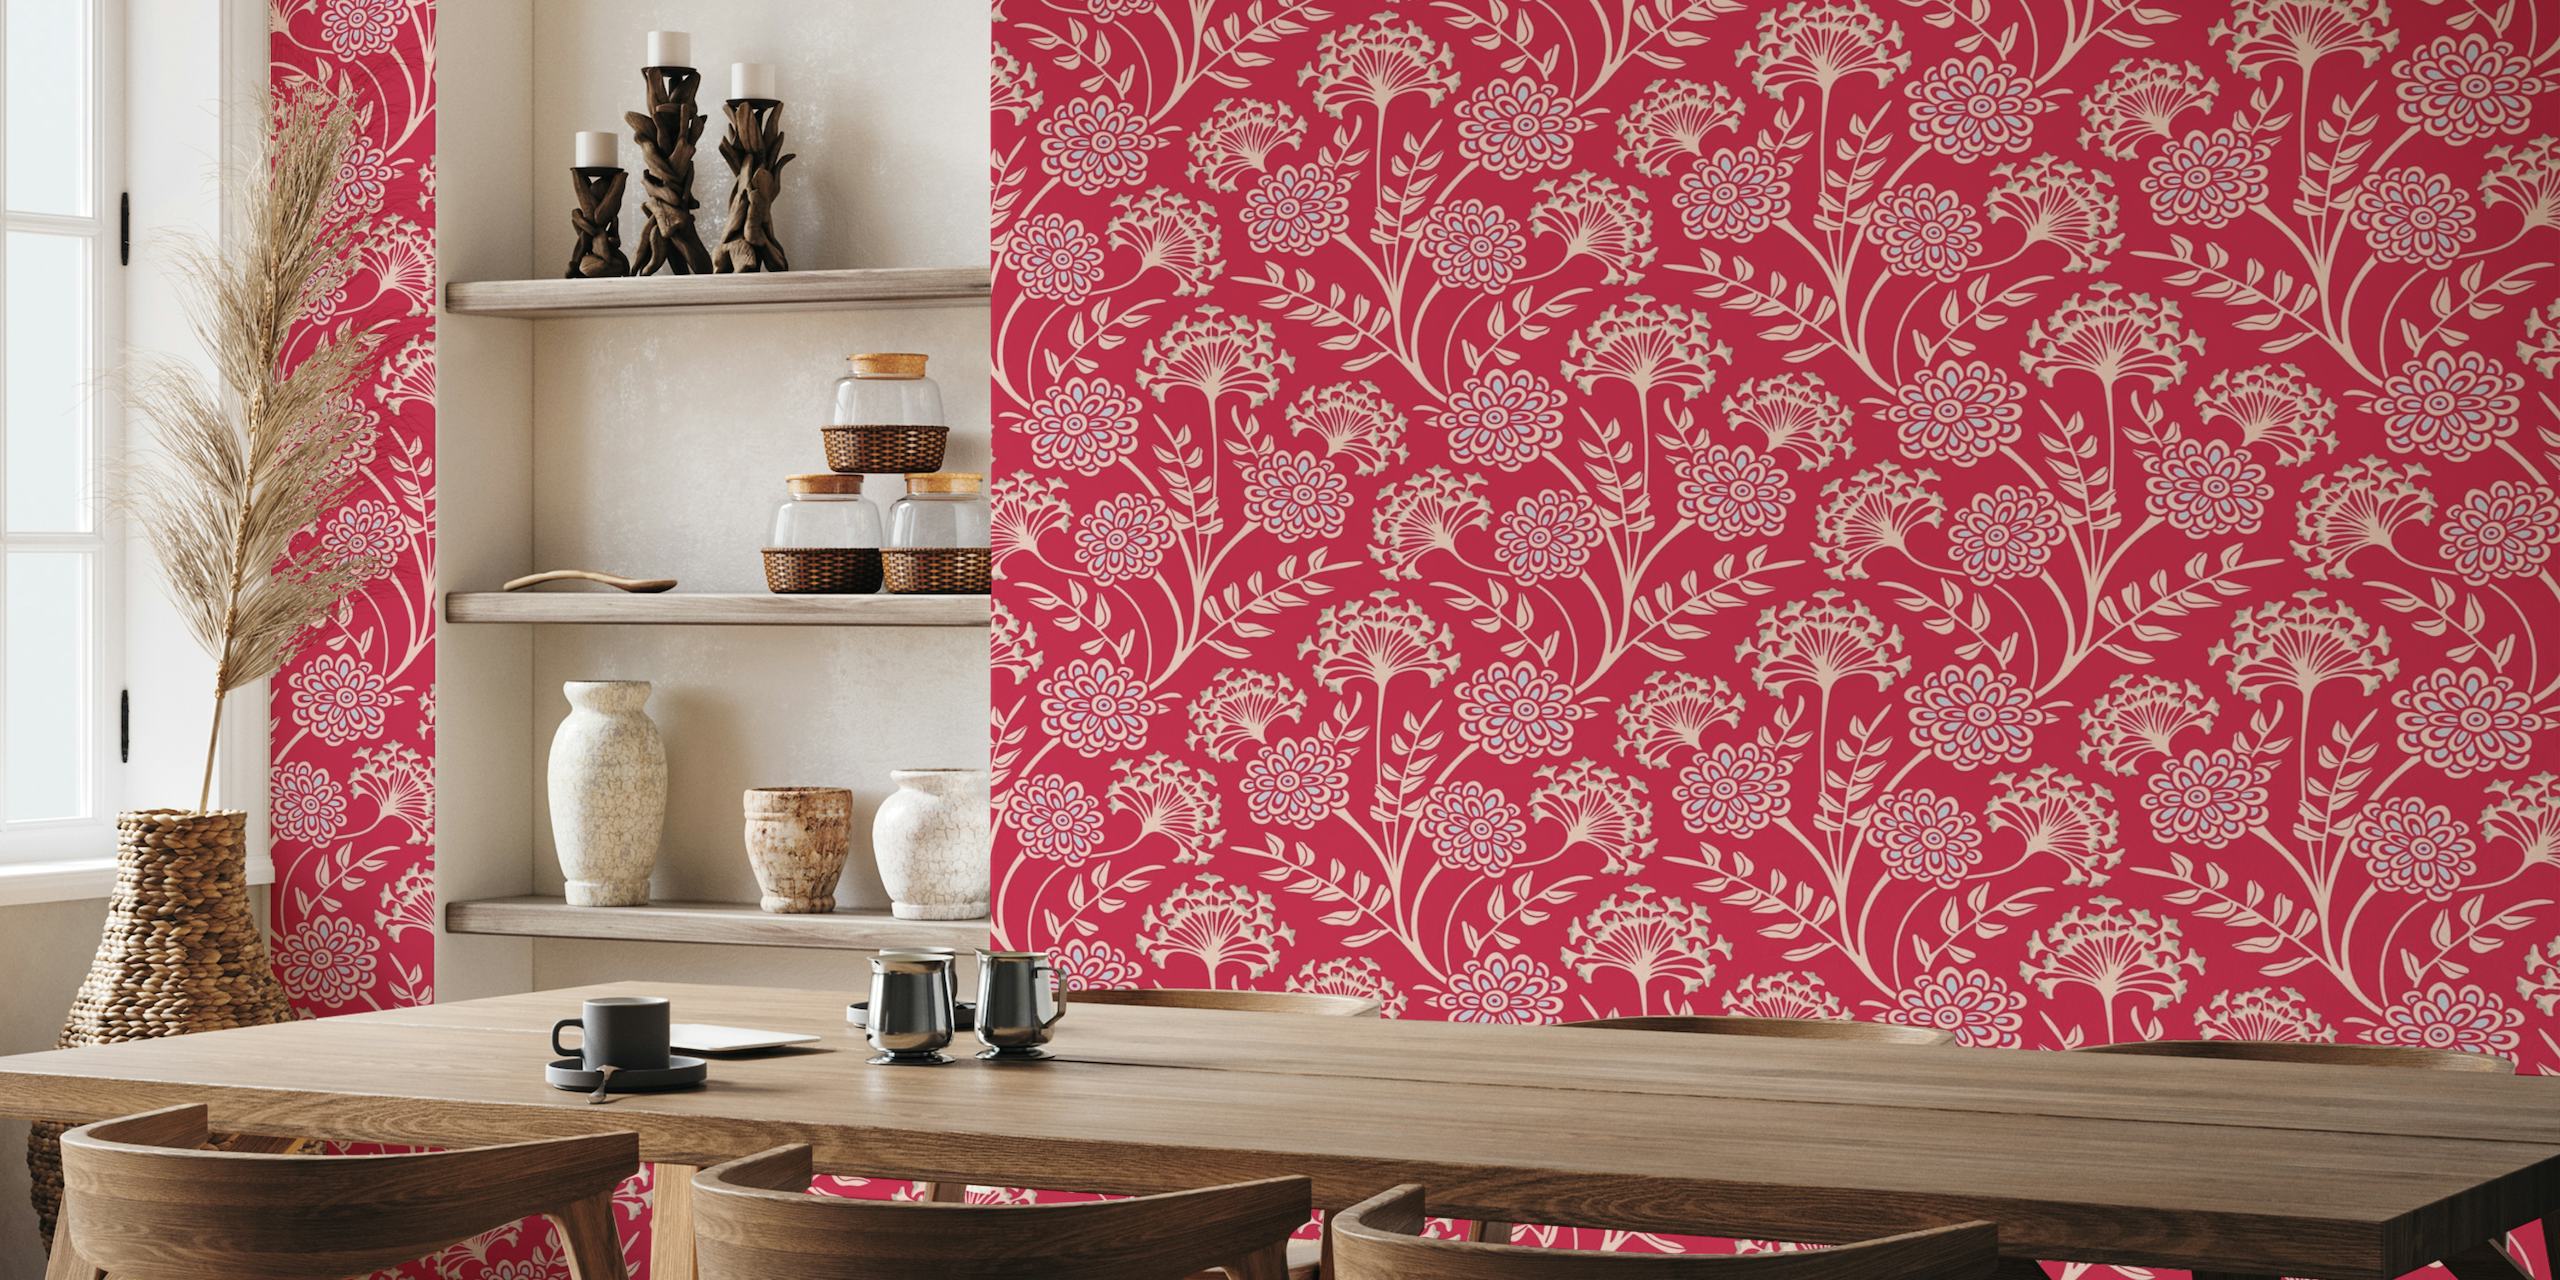 DANUBE Cottage Floral - Magenta Red - Large behang